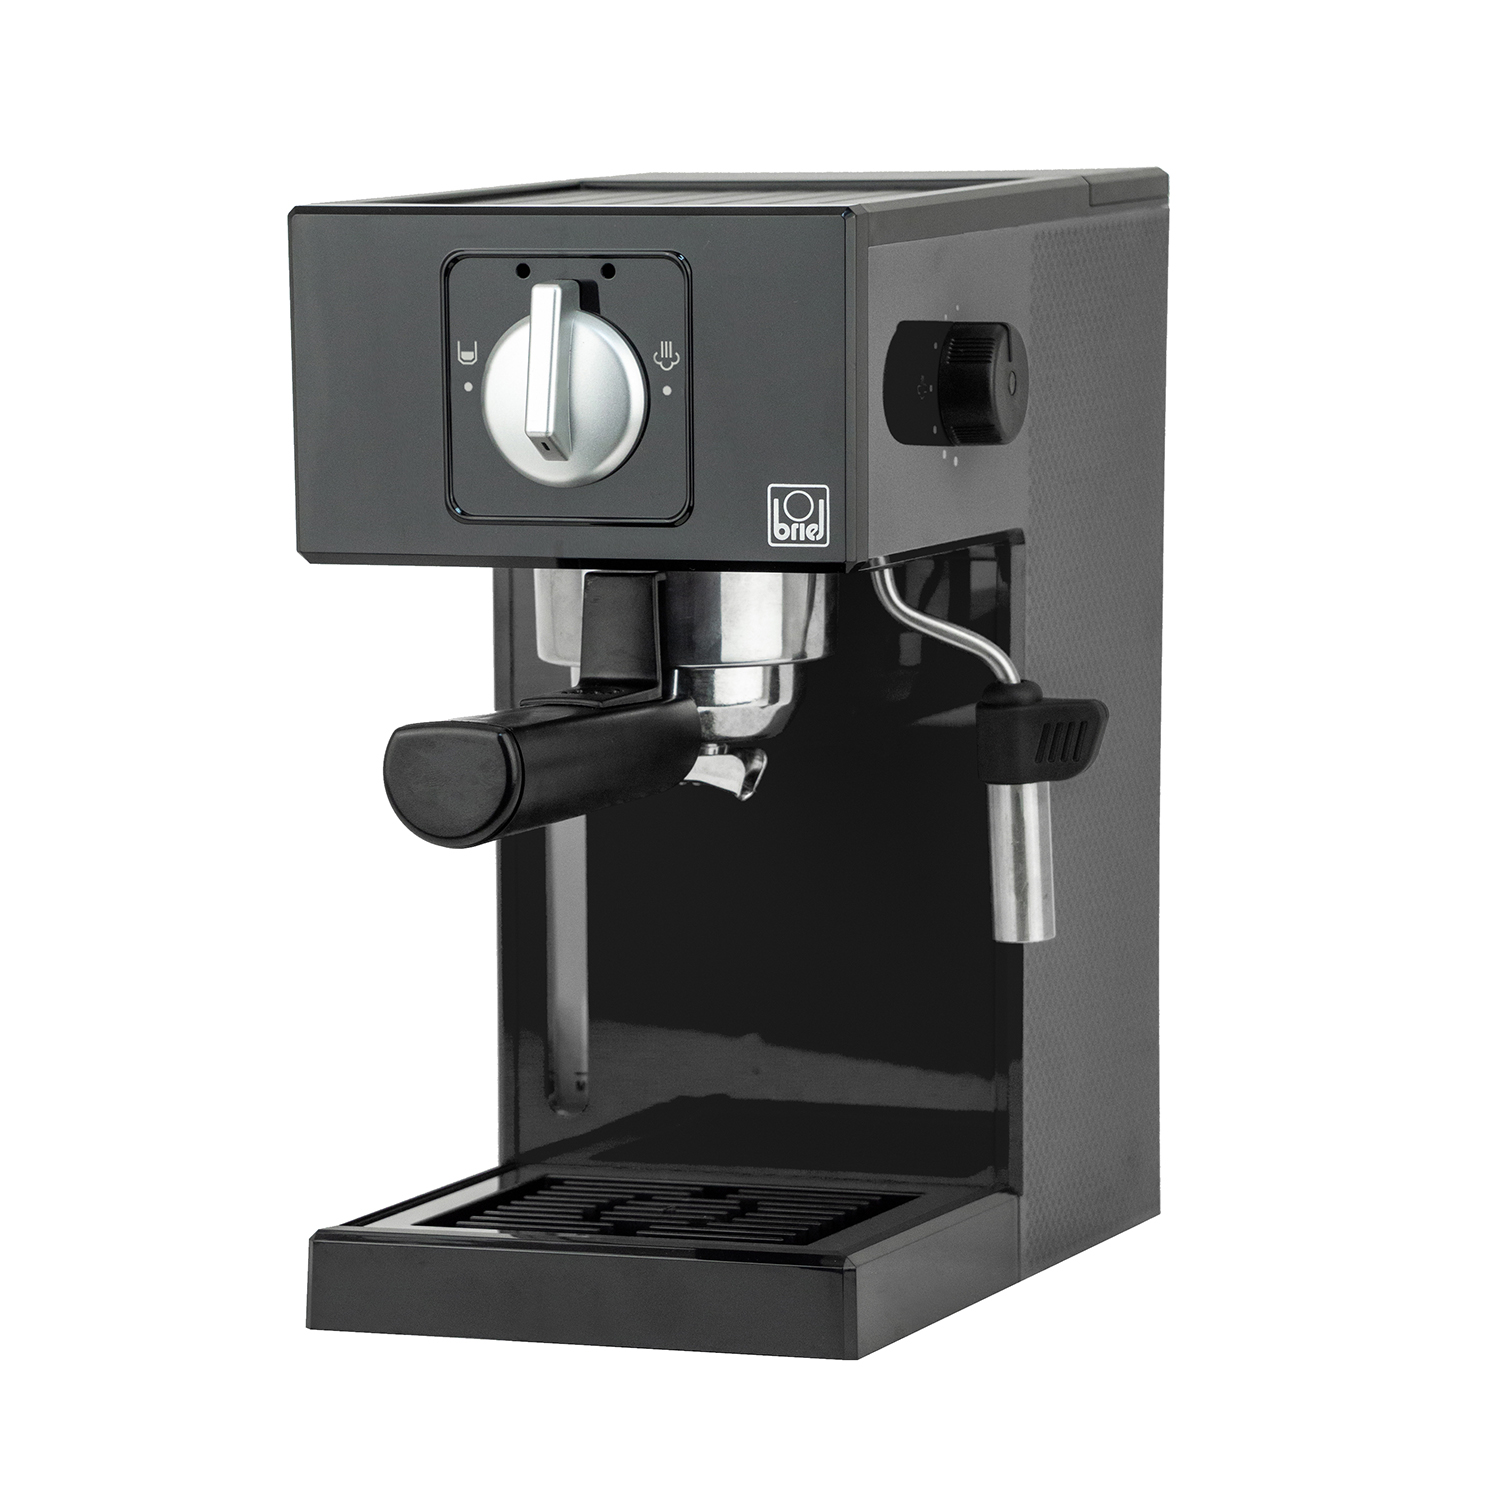 Maquina-cafe-espresso-A1-MANUAL-BLACK-2.jpg